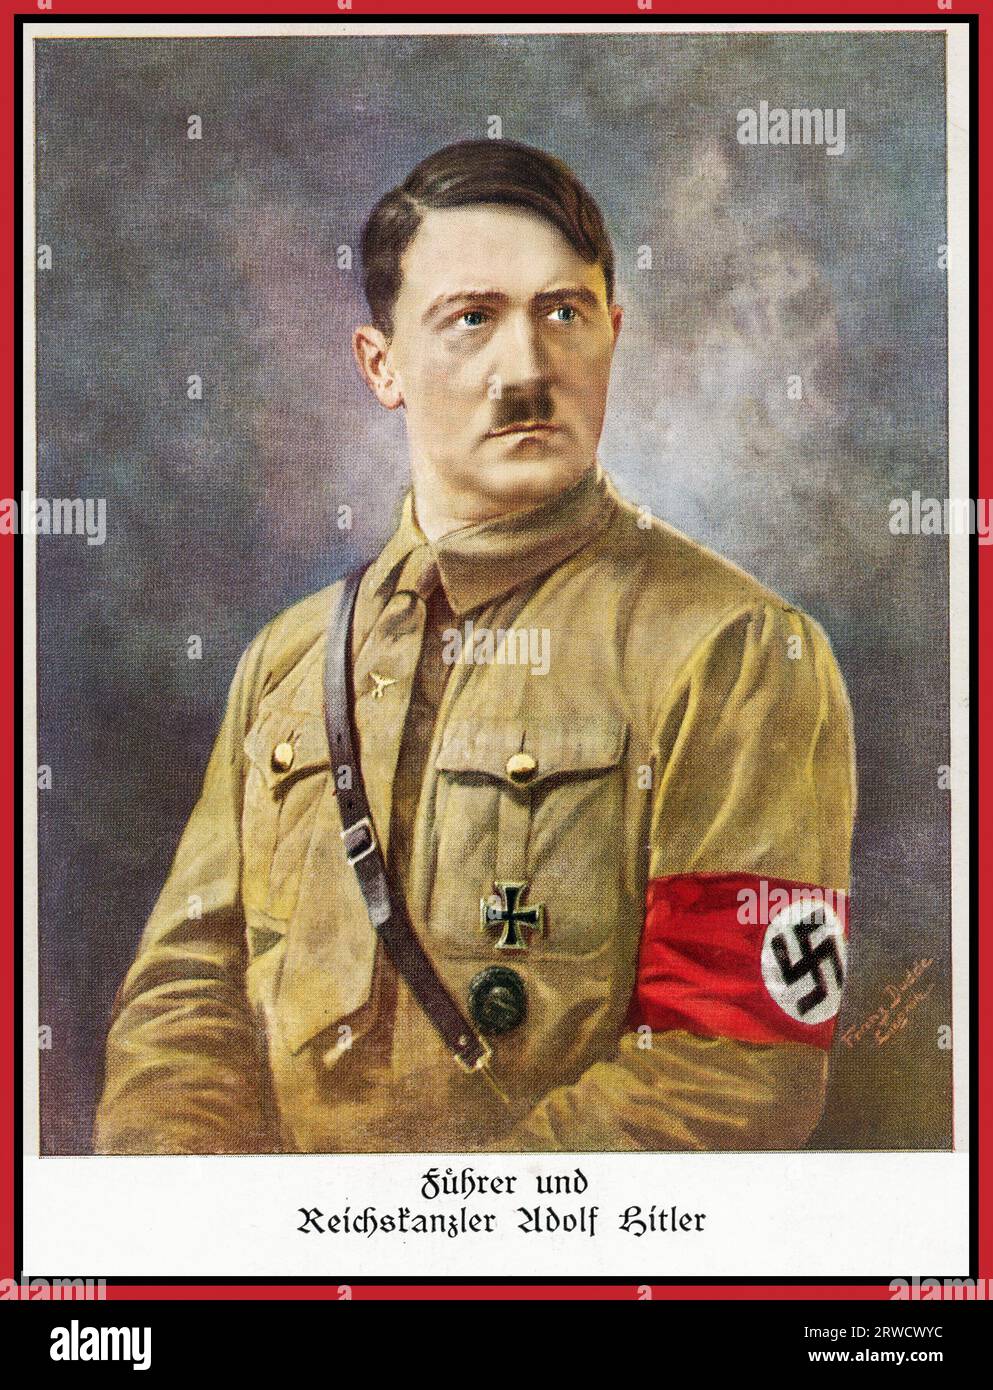 1930 Adolf Hitler Ritratto in uniforme NSDAP con fascia da braccio Swastika come Fuhrer e Reichschancellor (REICHSKANZLER) della Germania nazista Foto Stock